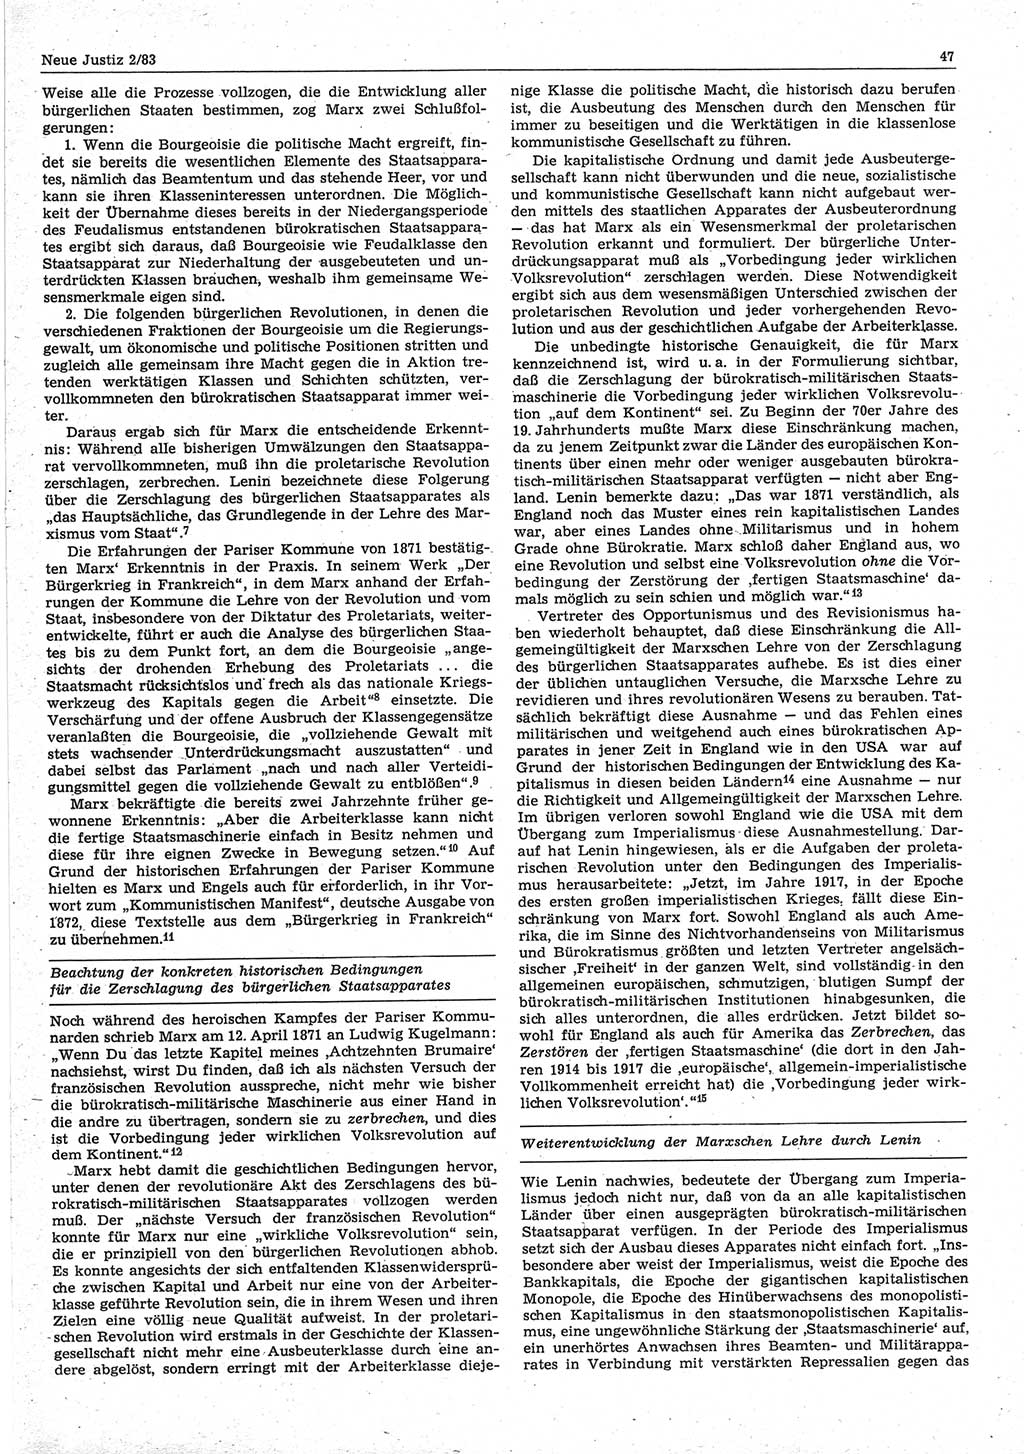 Neue Justiz (NJ), Zeitschrift für sozialistisches Recht und Gesetzlichkeit [Deutsche Demokratische Republik (DDR)], 37. Jahrgang 1983, Seite 47 (NJ DDR 1983, S. 47)